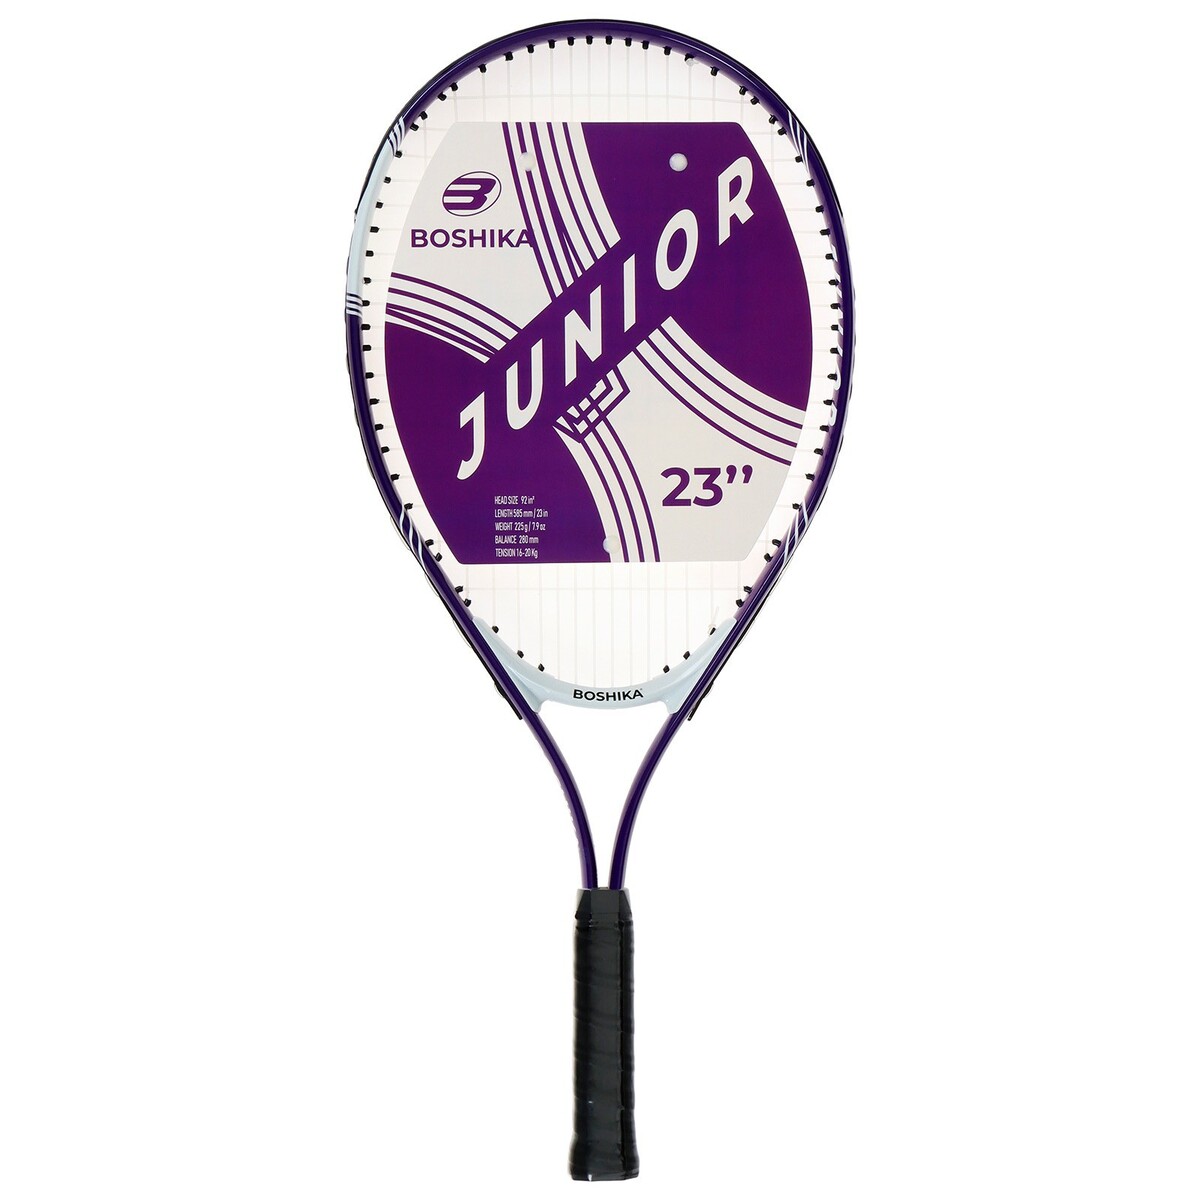 Ракетка для большого тенниса детская boshika junior, алюминий, 23'', цвет фиолетовый мячи для большого тенниса swidon 929 3 штуки в пакете e29376